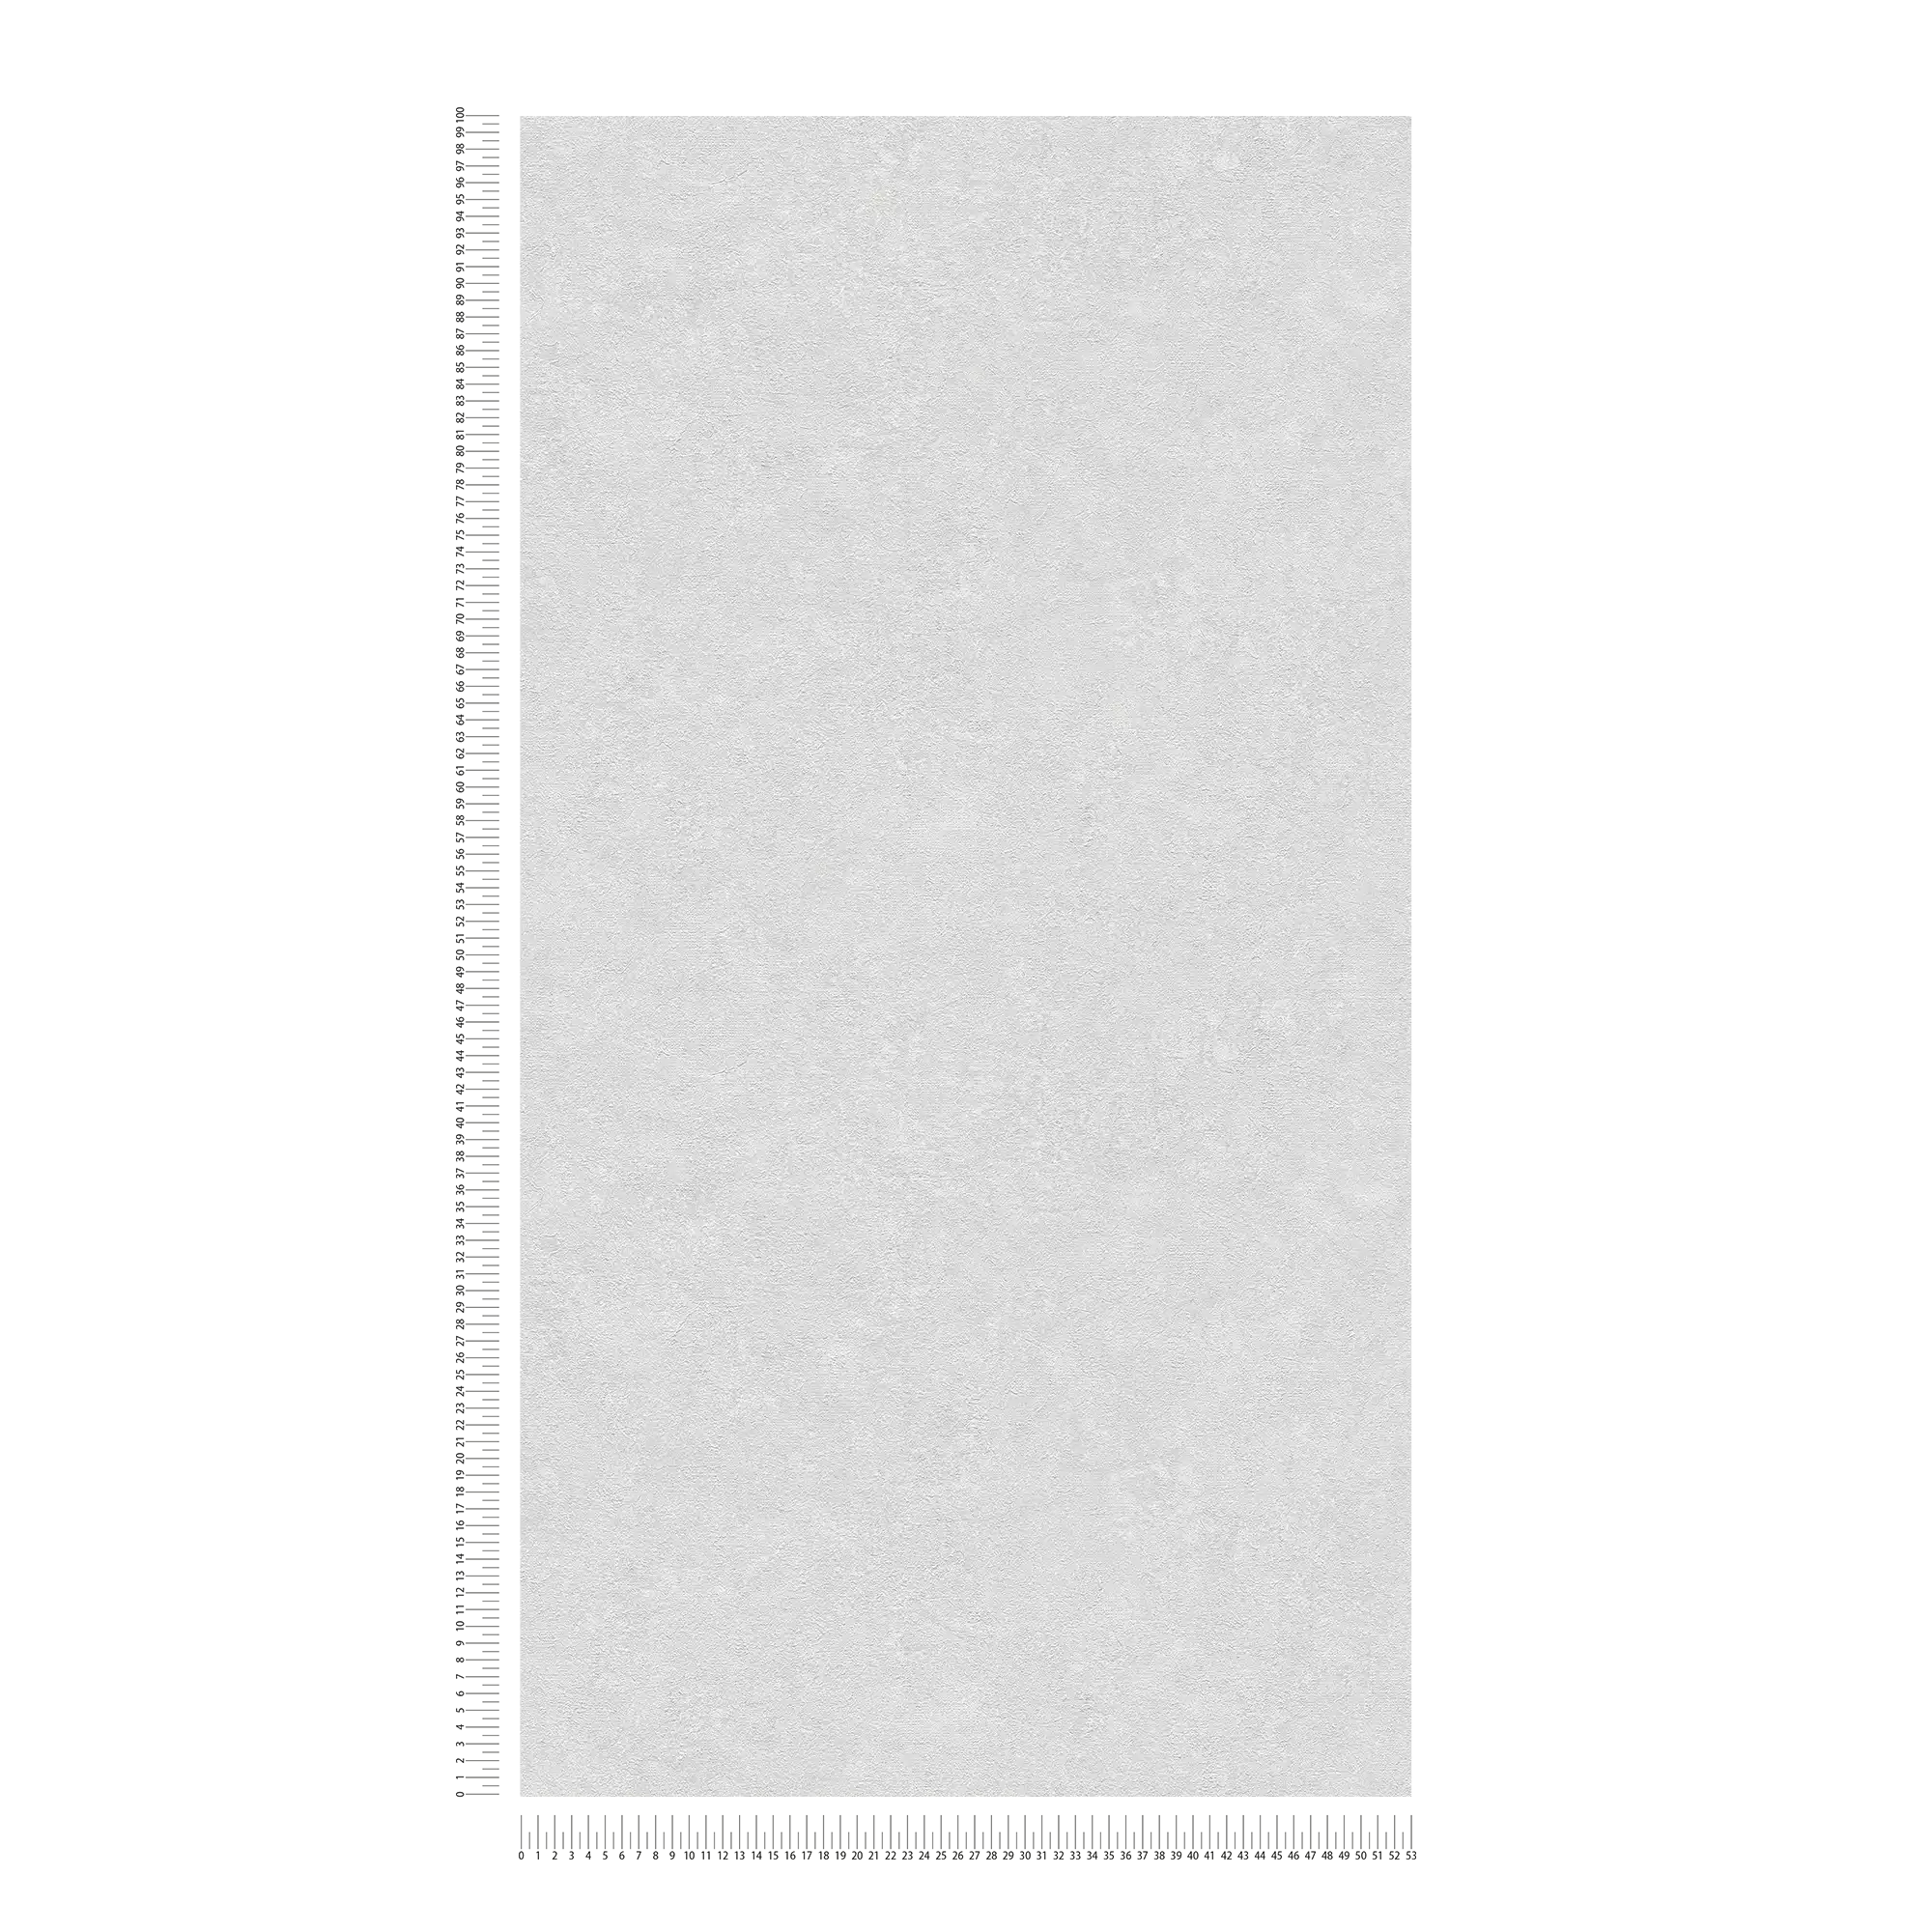             behang effen met gipslook - grijs, wit
        